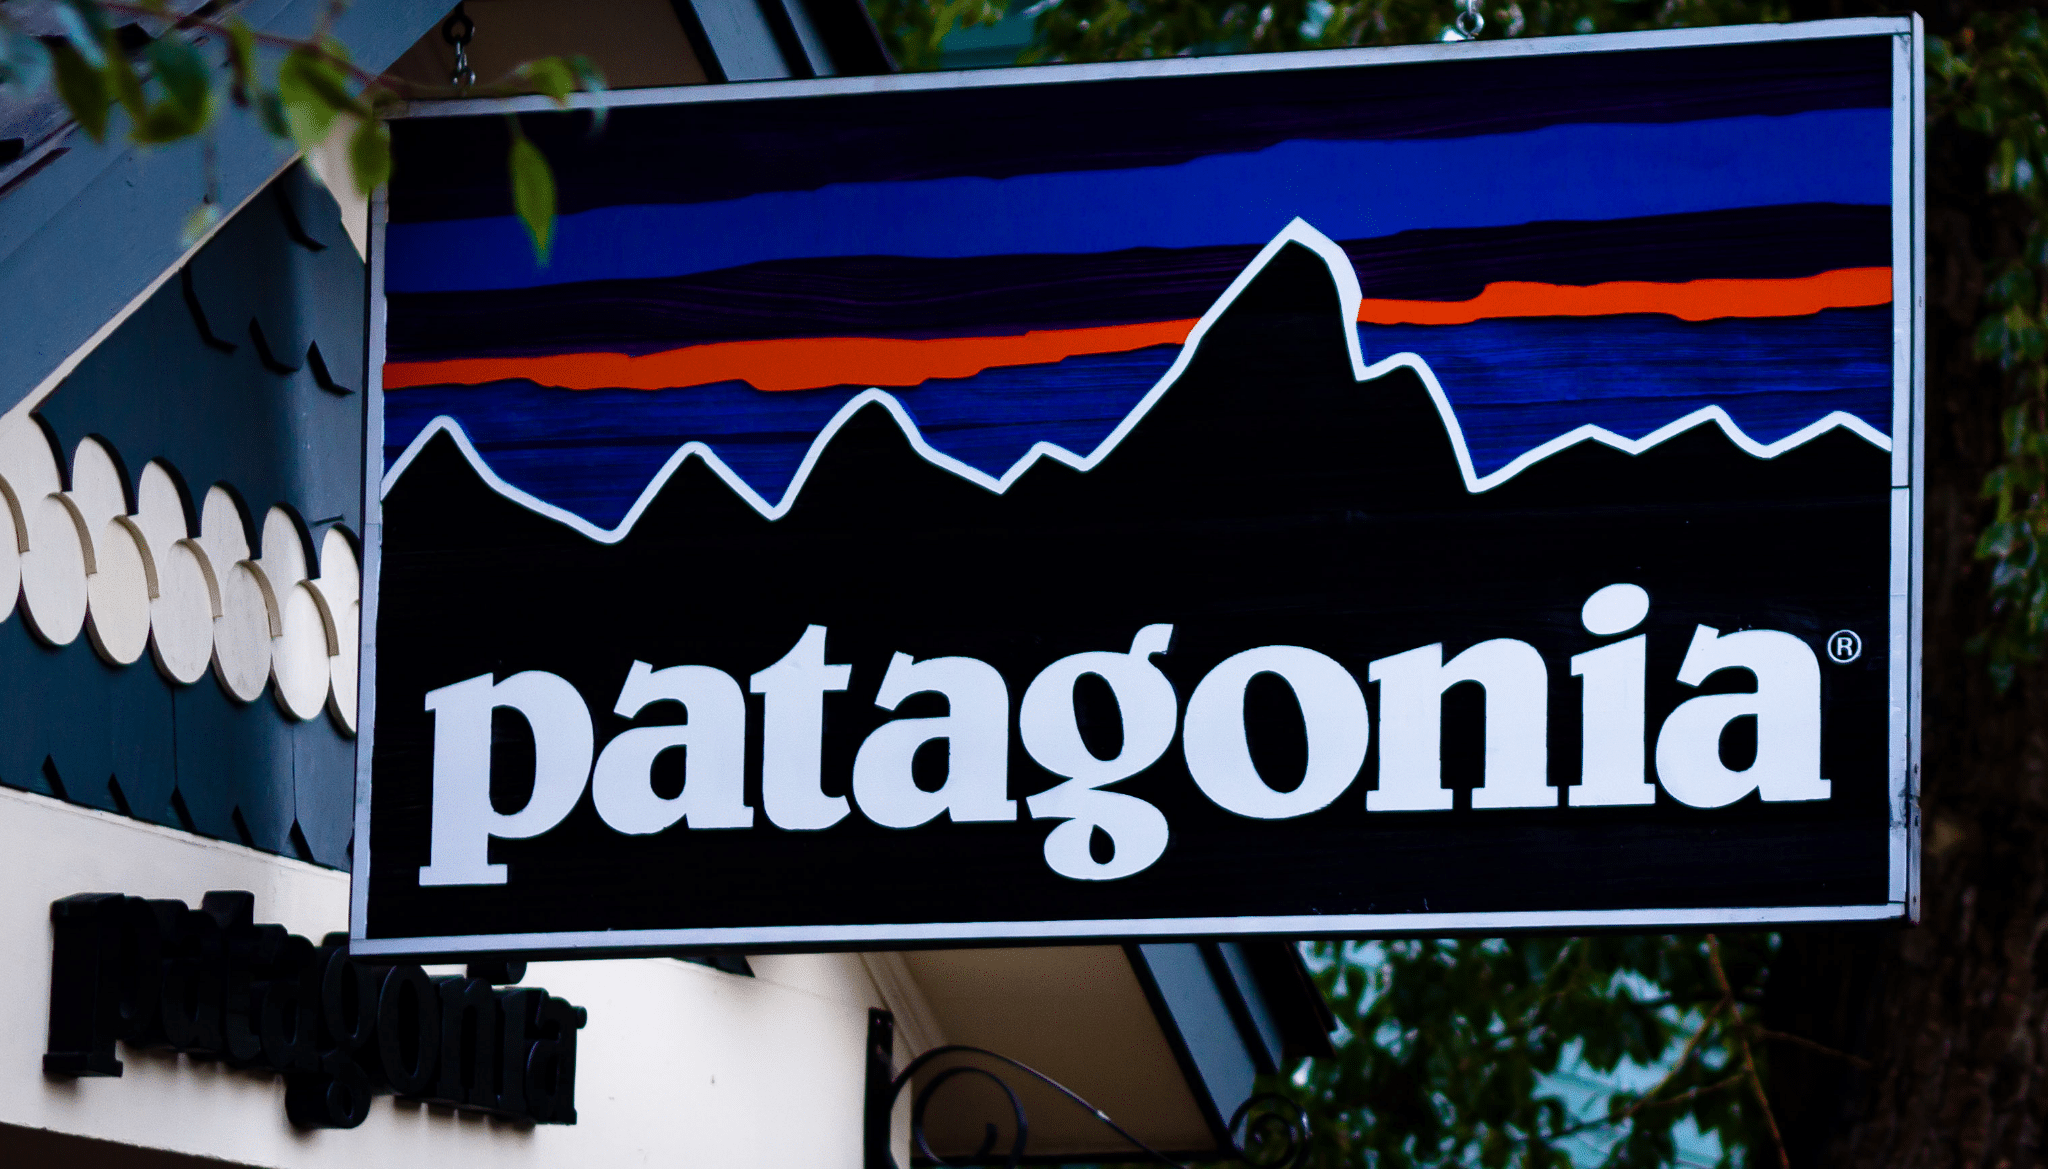 Patagonia signage